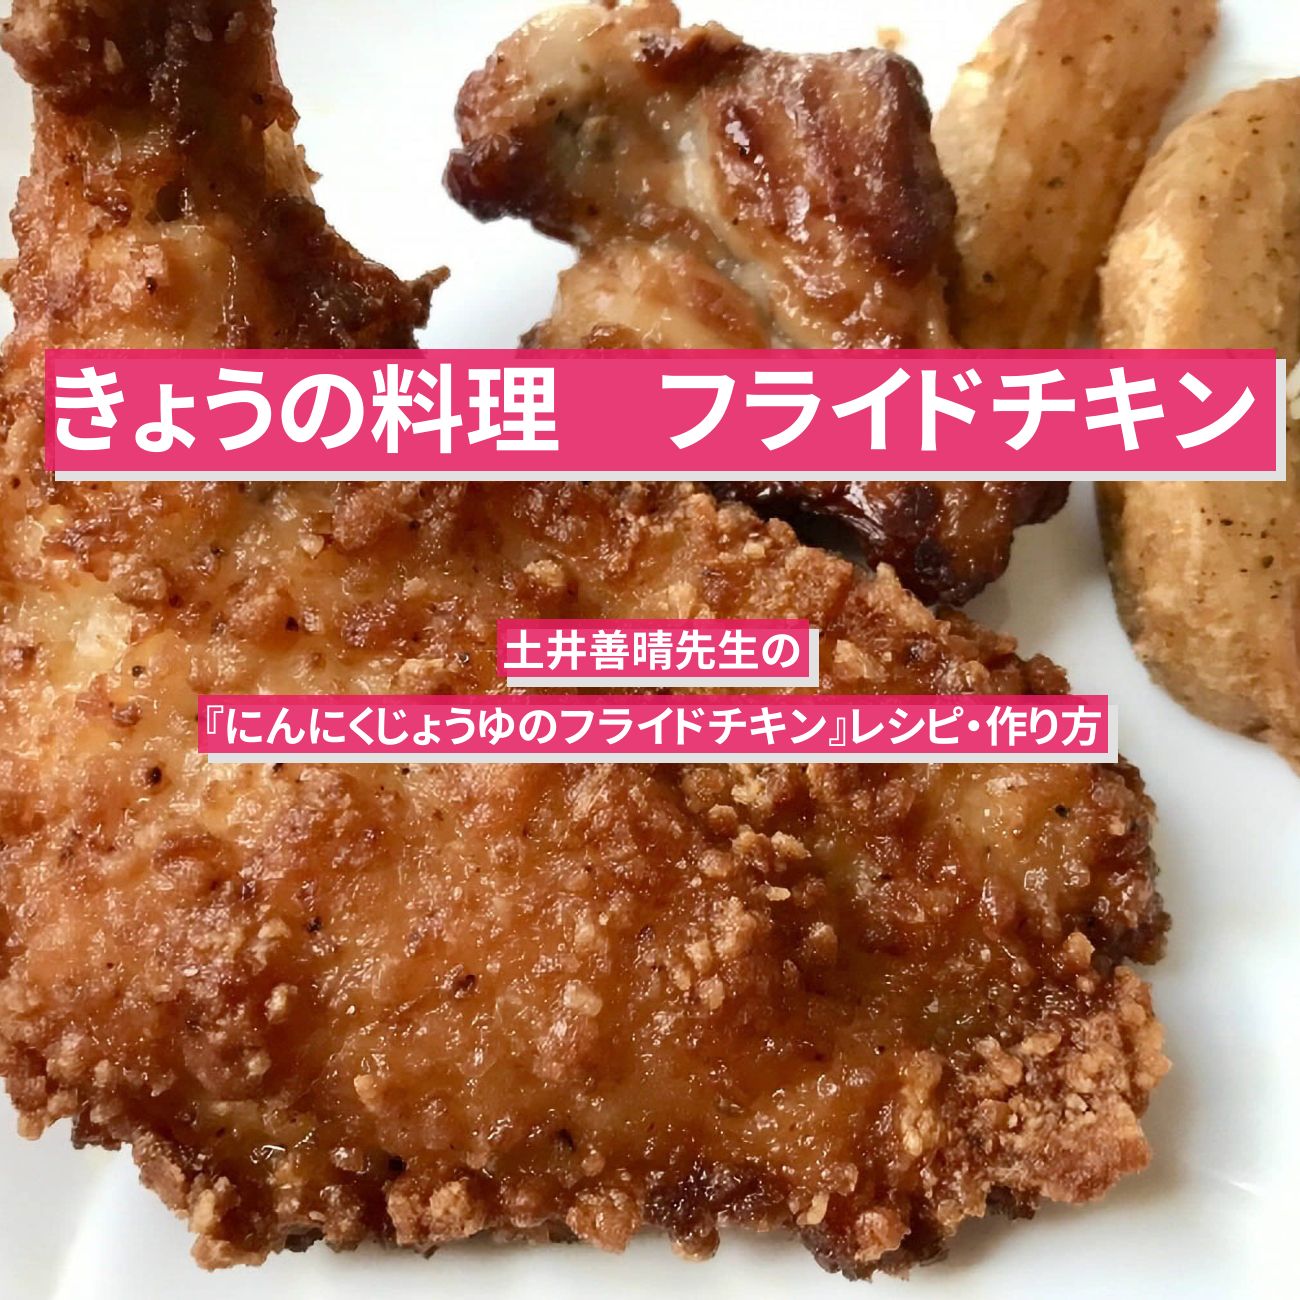 【きょうの料理】『フライドチキン(にんにくじょうゆ)』土井善晴先生のレシピ・作り方